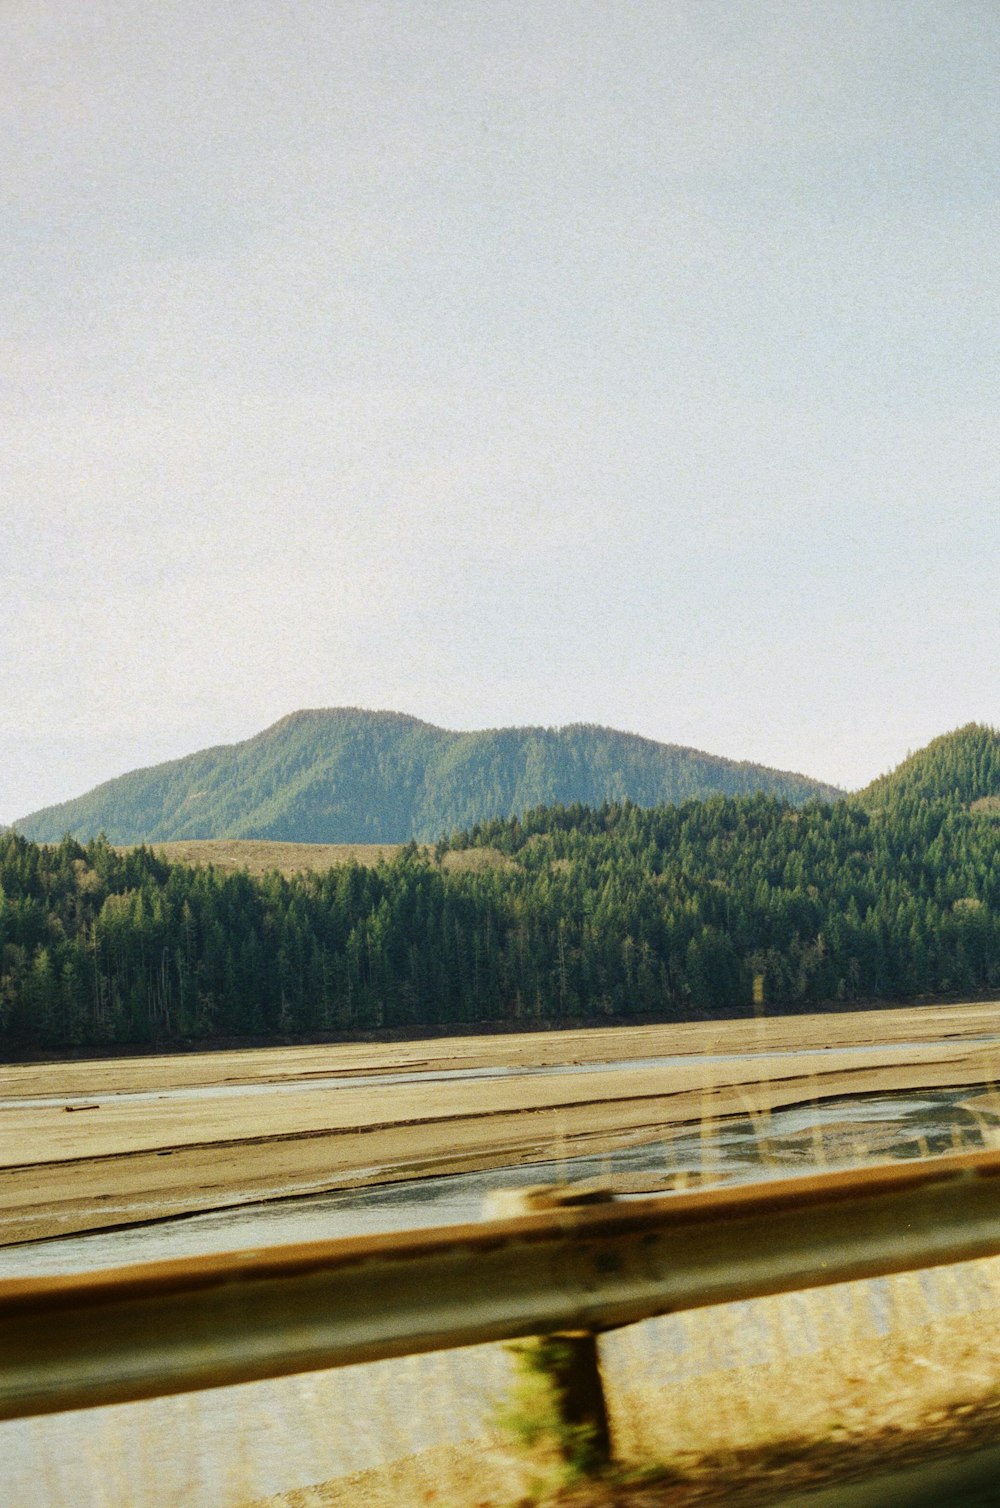 Una vista de una cadena montañosa desde un vehículo en movimiento